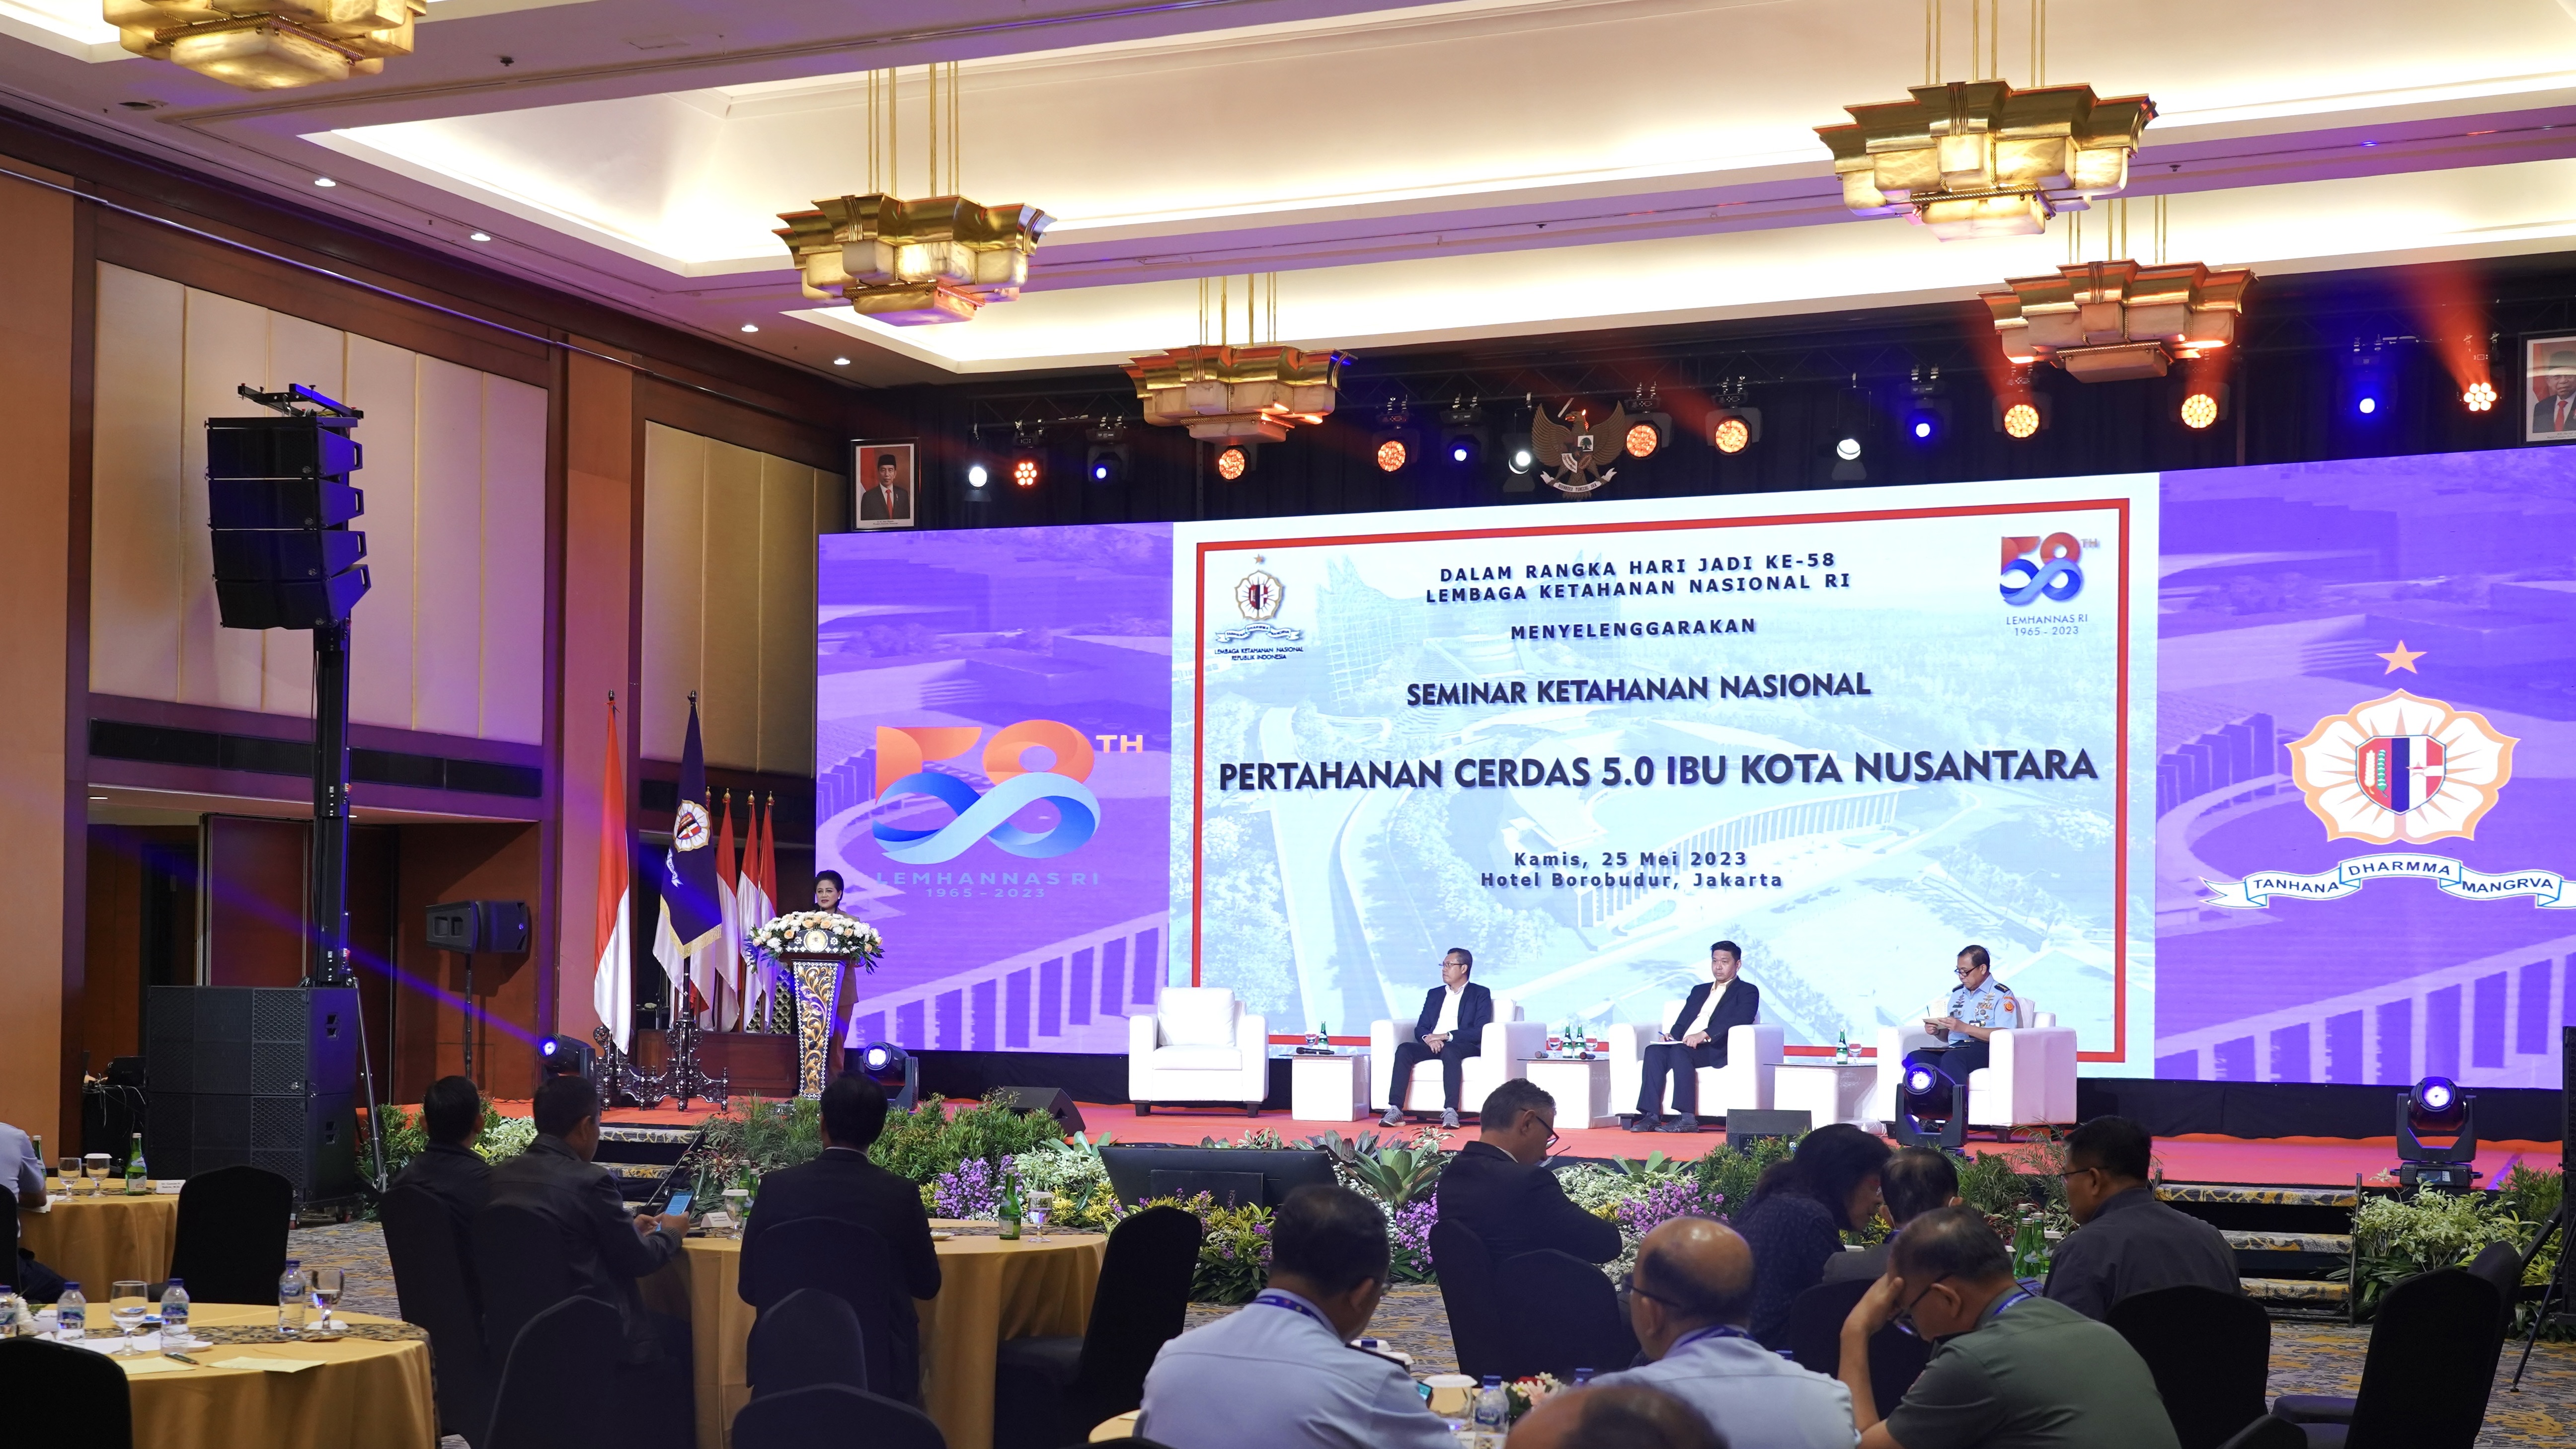 Lemhannas RI Selenggarakan Seminar Ketahanan Nasional “Pertahanan Cerdas 5.0 Ibu Kota Nusantara”